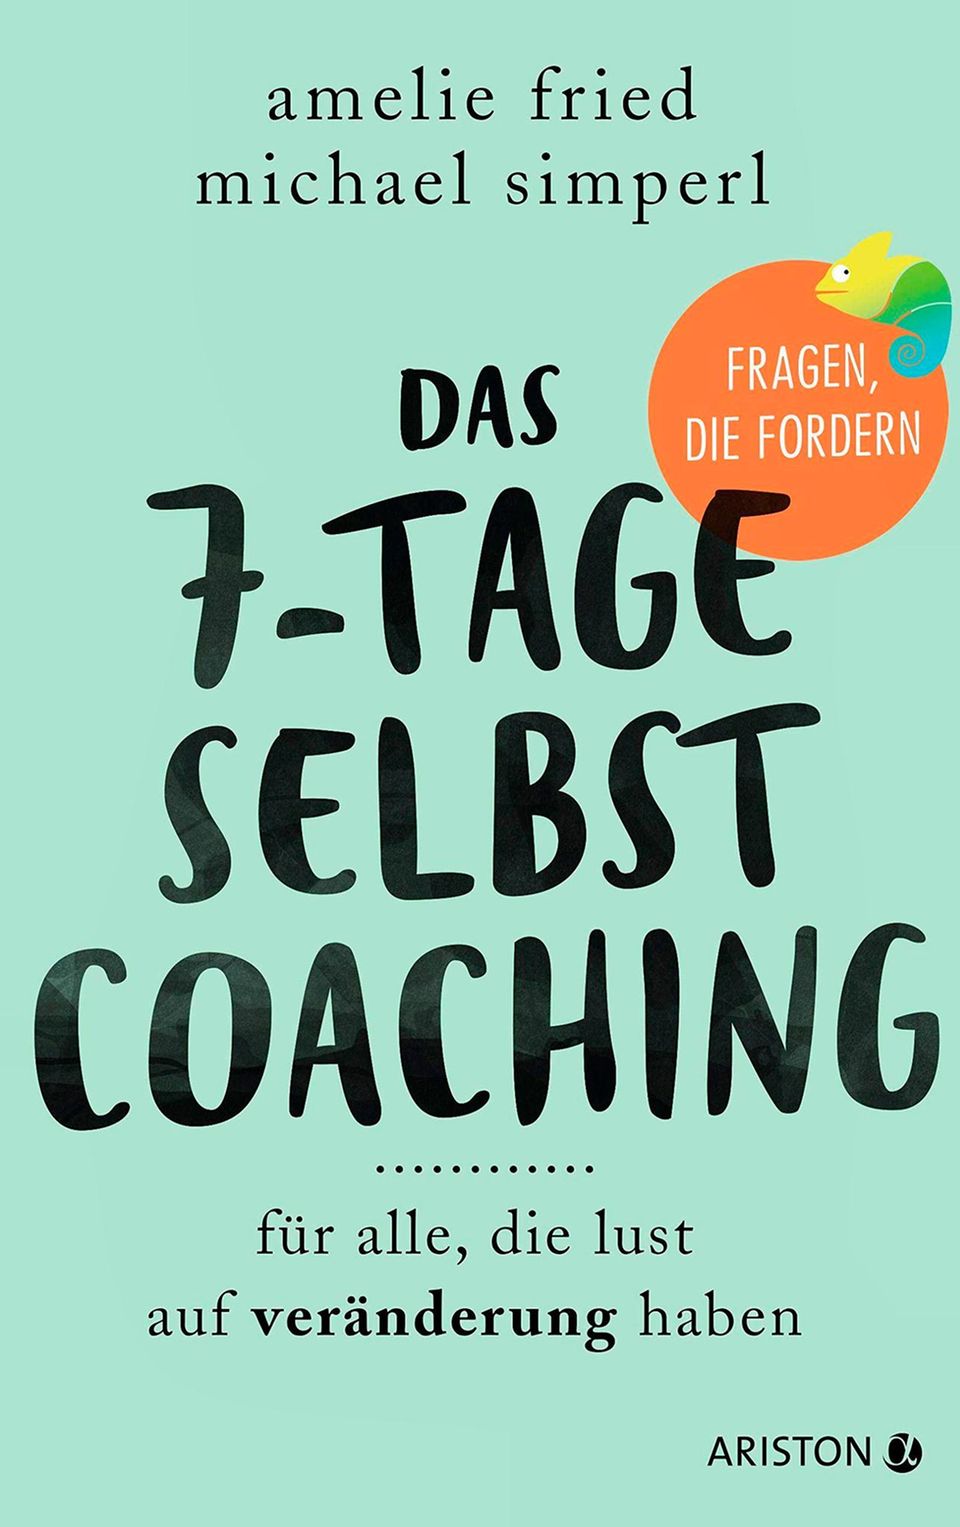 Buchtipp: Amelie Fried und Michael Simperl: "Das 7-Tage-Selbstcoaching. Für alle, die Lust auf Veränderung haben“, 208 Seiten, 18 Euro, Ariston